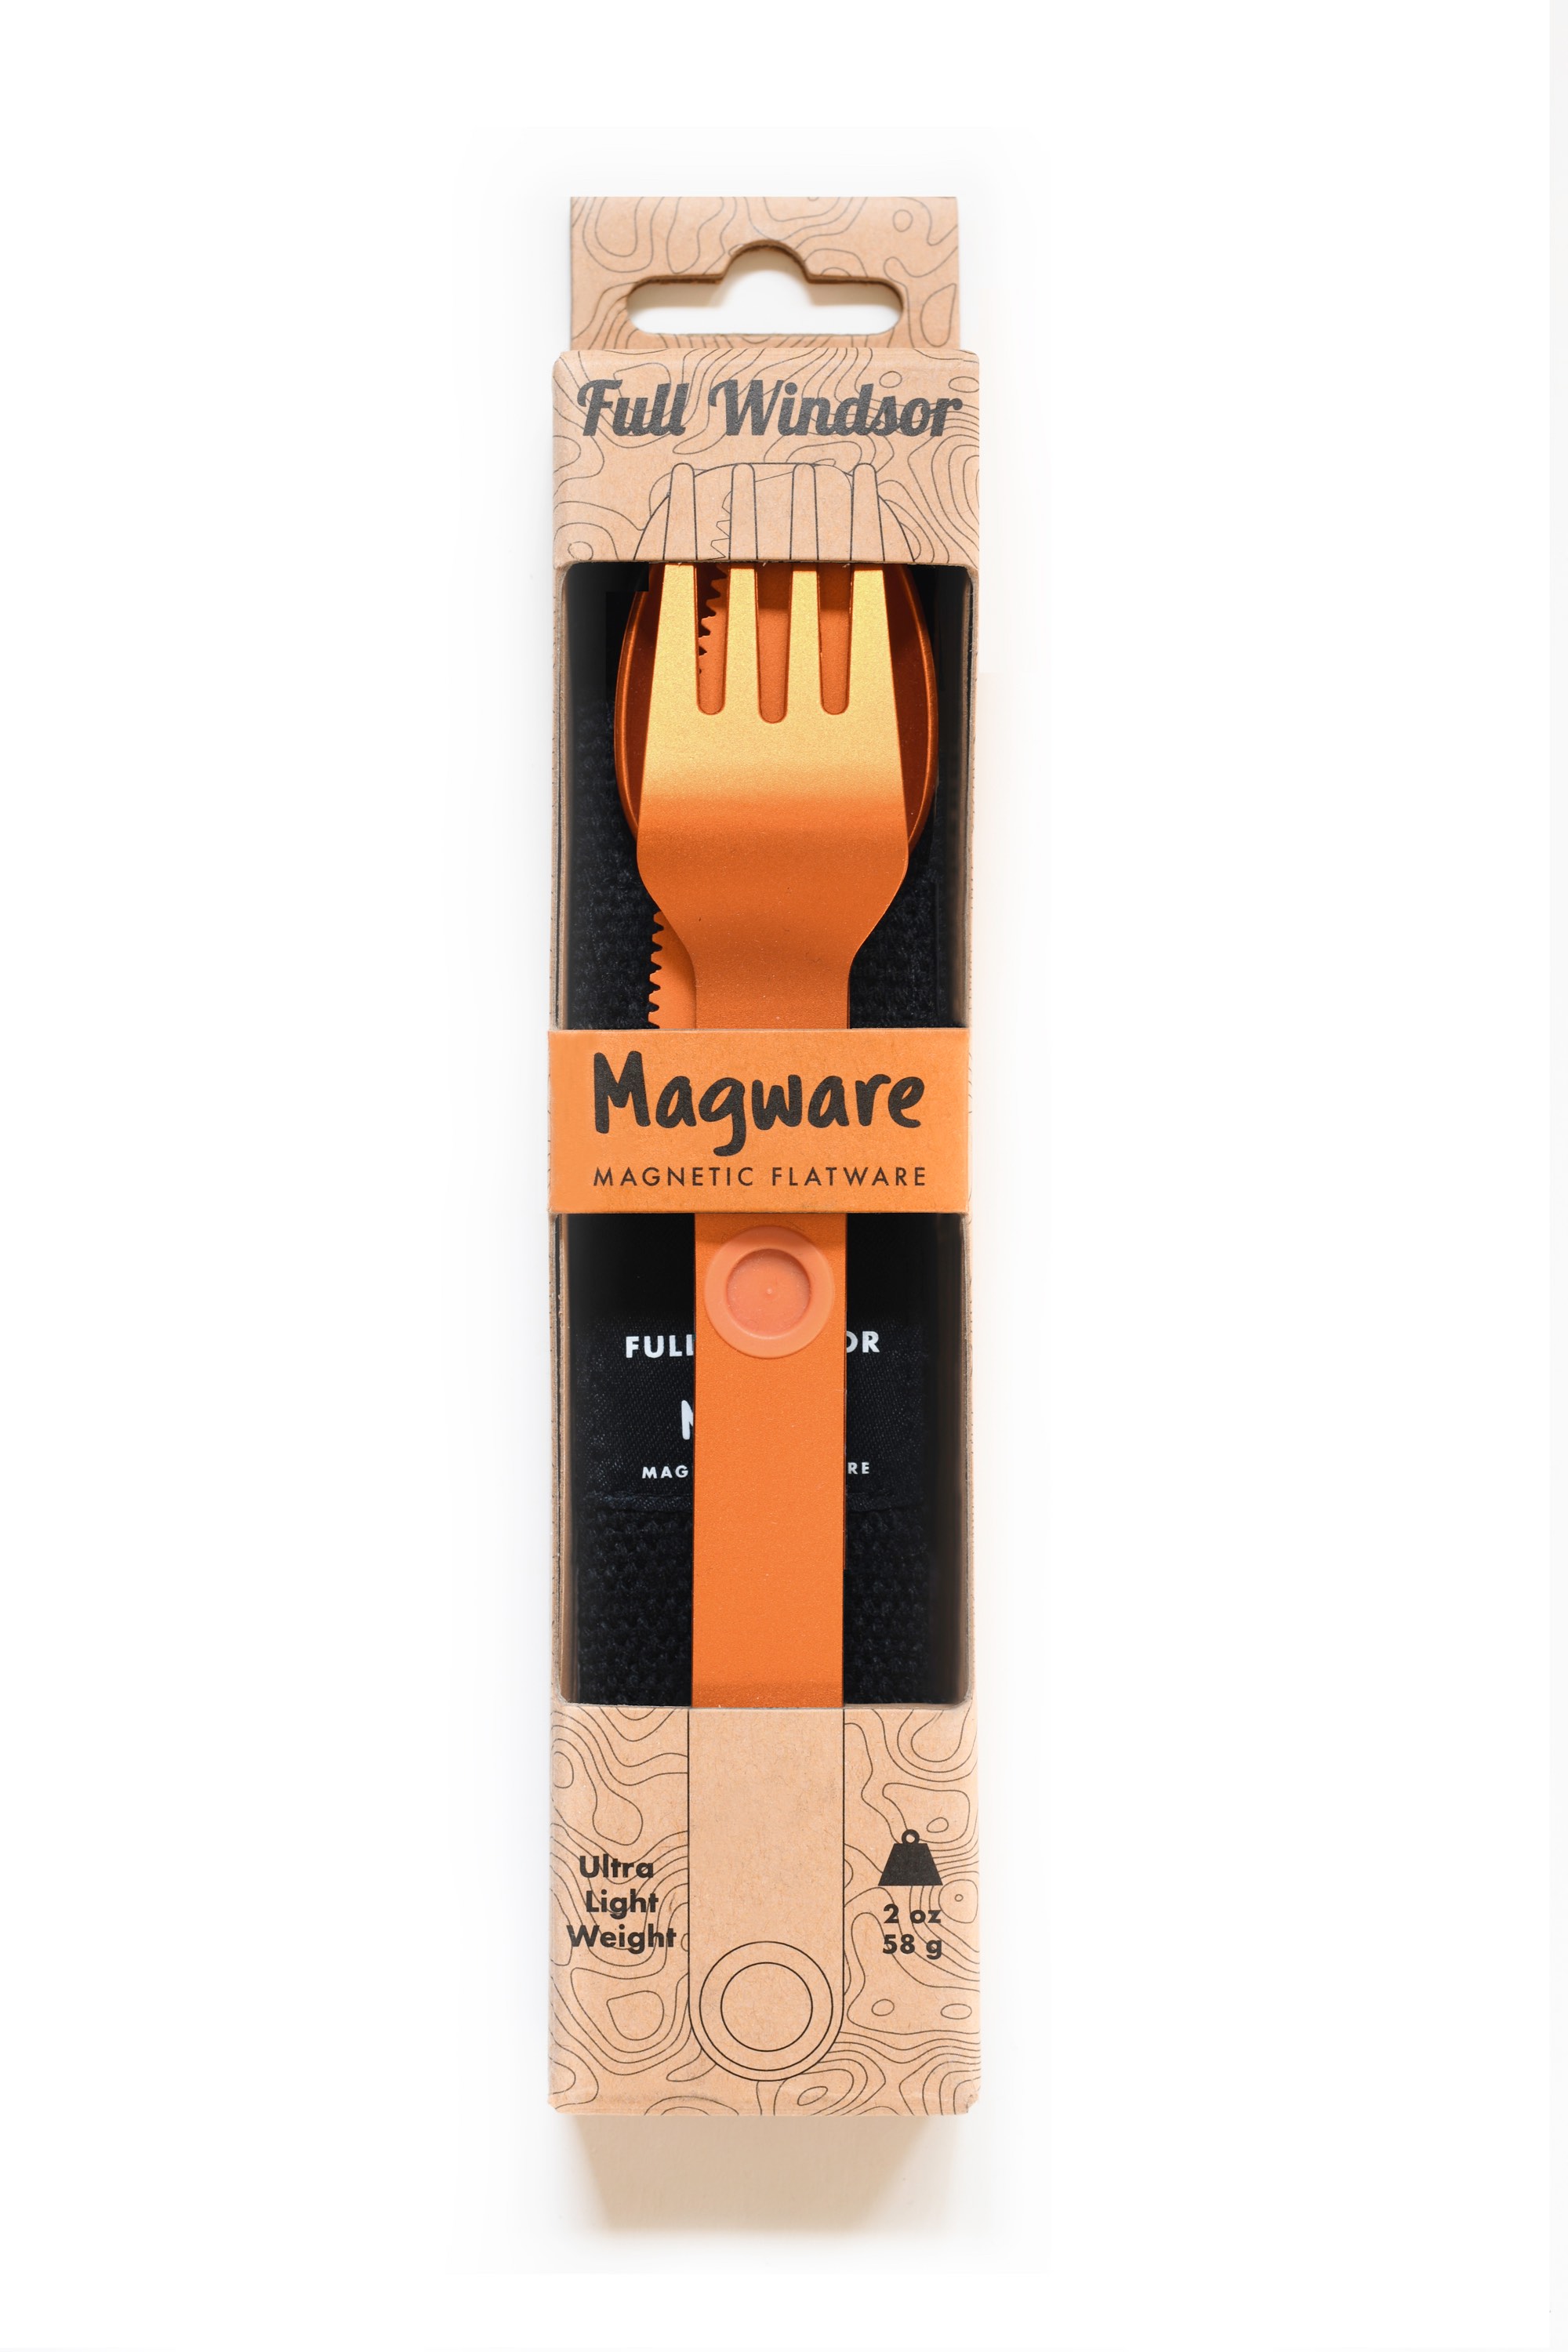 Full-Windsor Magware (orange)